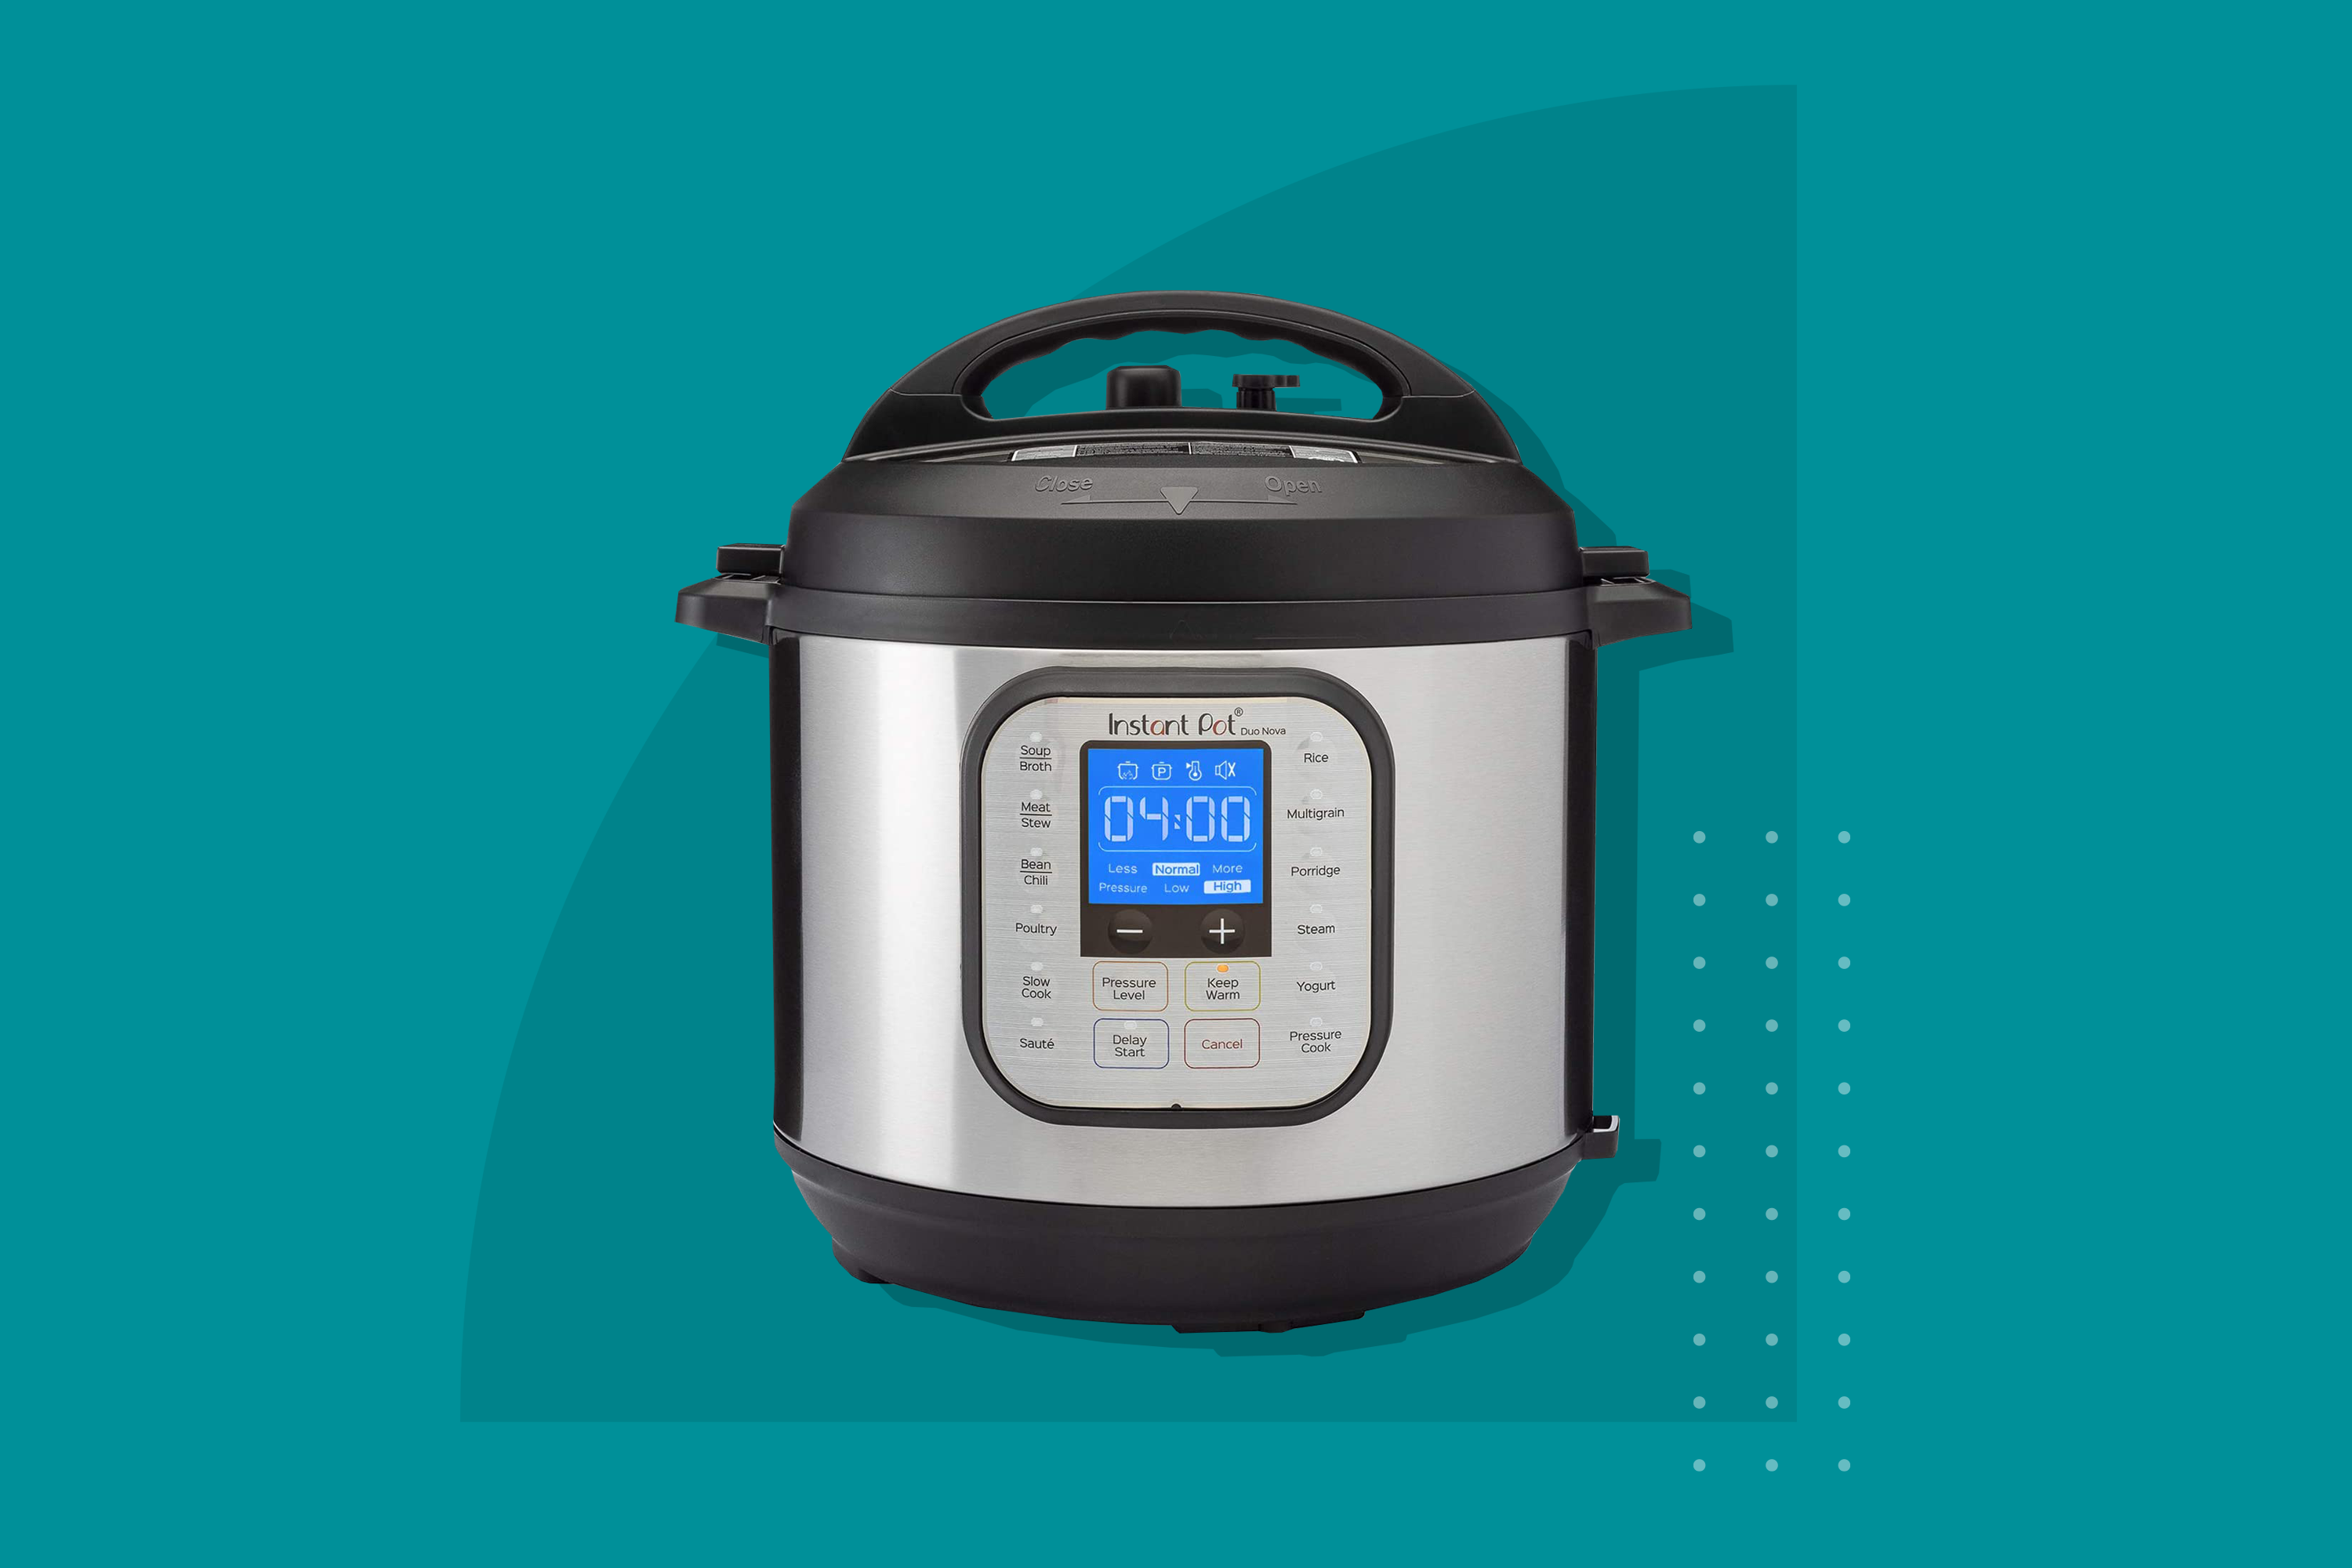 8 quart Instant Pot - Duo Evo Plus - appliances - by owner - sale